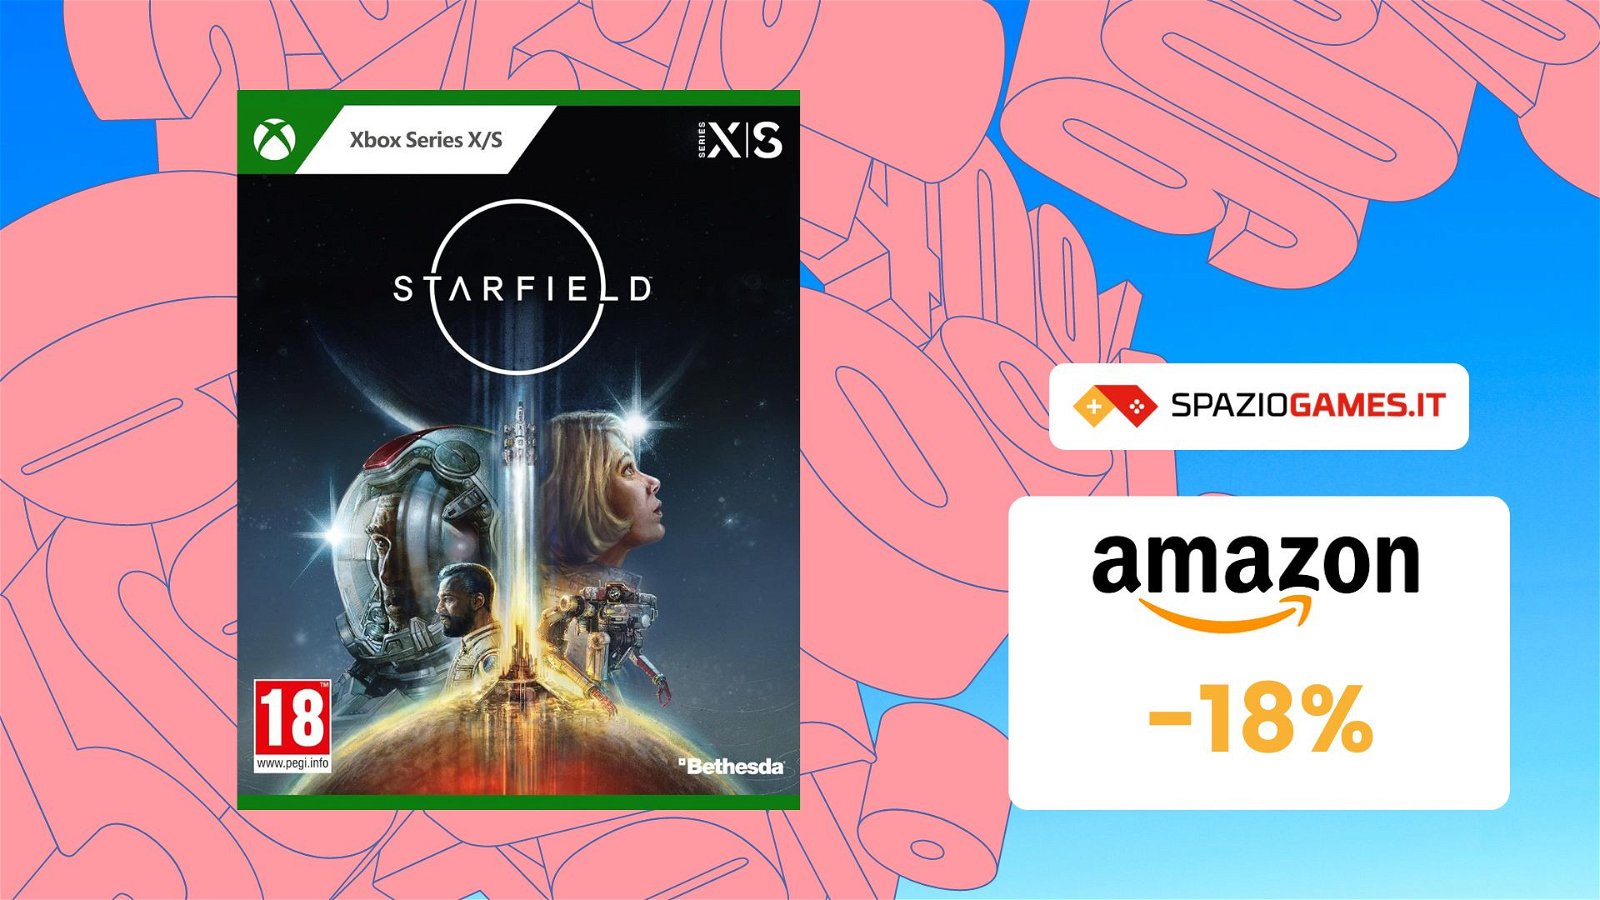 Starfield per Xbox: acquistalo ora al prezzo PIU' BASSO di sempre! SOLI 38€!